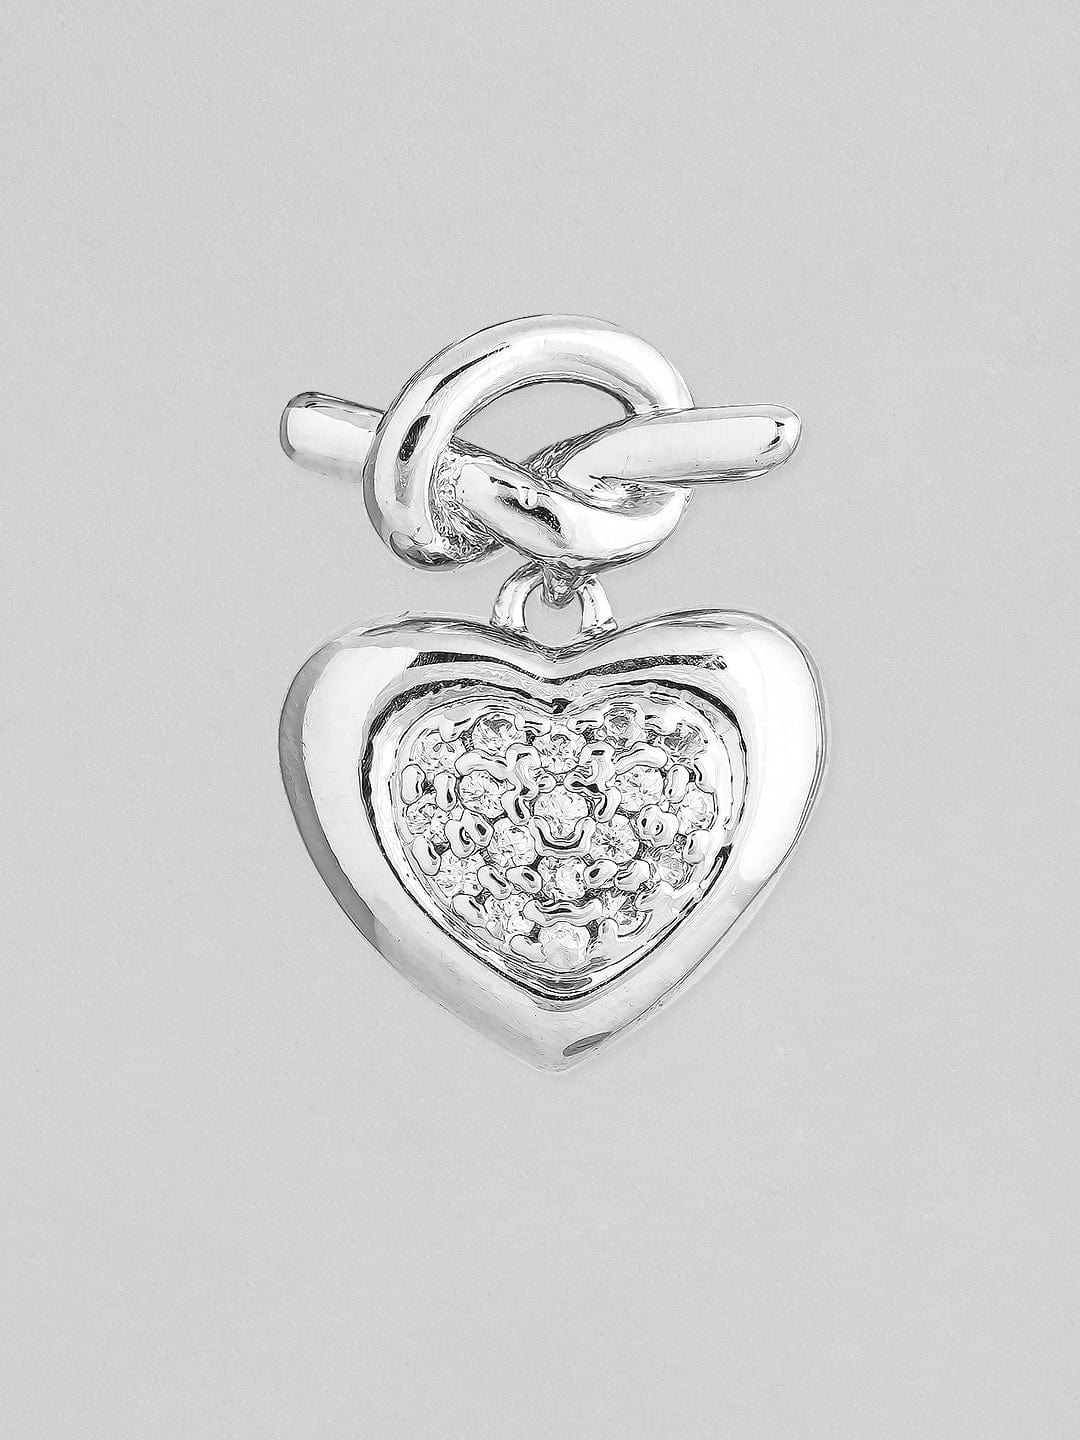 Rubans Voguish Silver-Toned Heart Shaped Studs Earrings Earrings